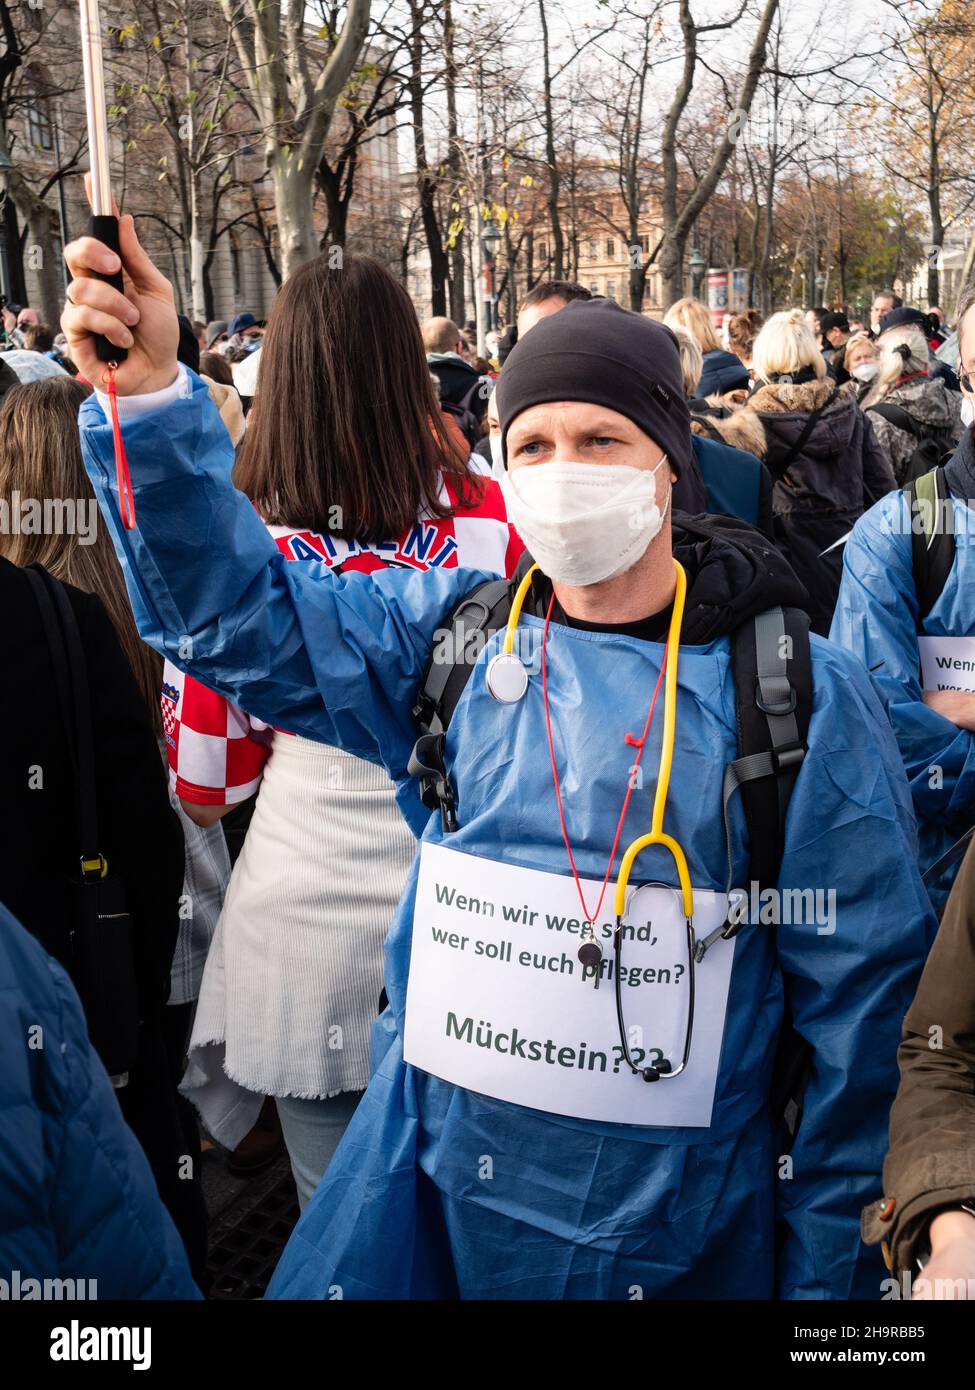 Vienna, Austria - Novembre 20 2021: Anti-Vax Covid-19 Nurse dimostratore o operatore sanitario a una protesta, Rally o dimostrazione. Foto Stock